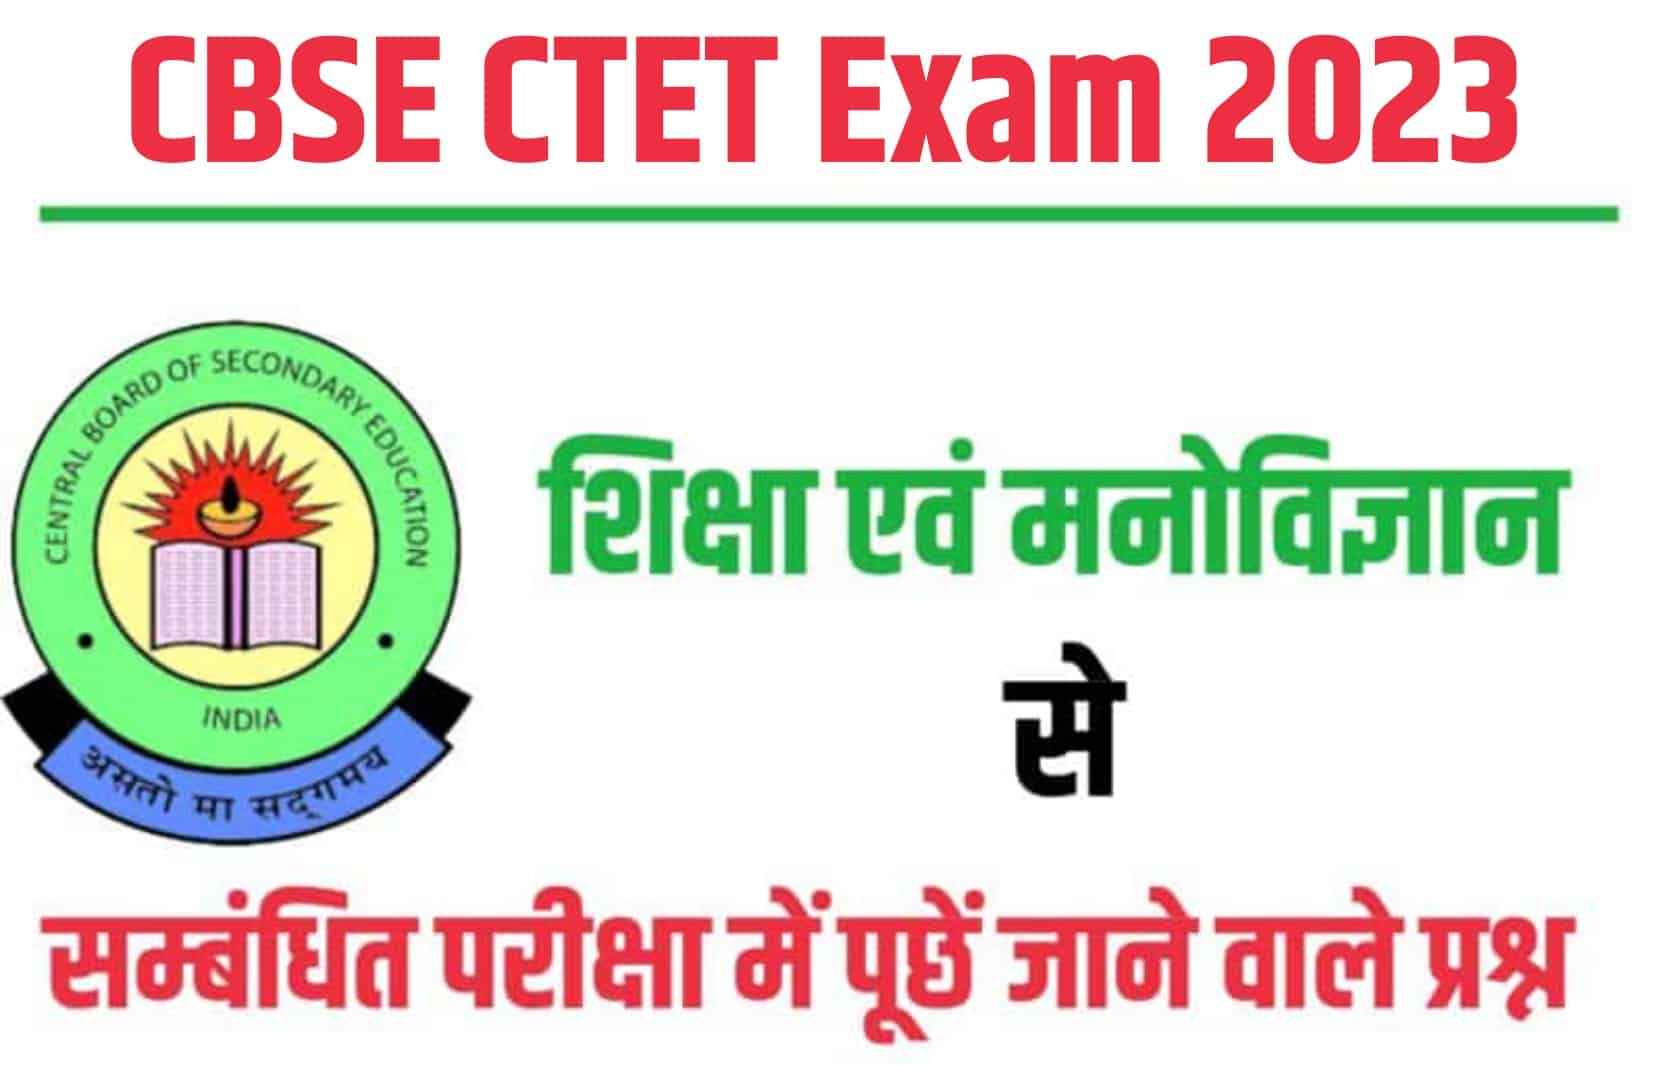 CBSE CTET Exam 2023 | शिक्षा एवं मनोविज्ञान  से सम्बंधित महत्वपूर्ण प्रश्न